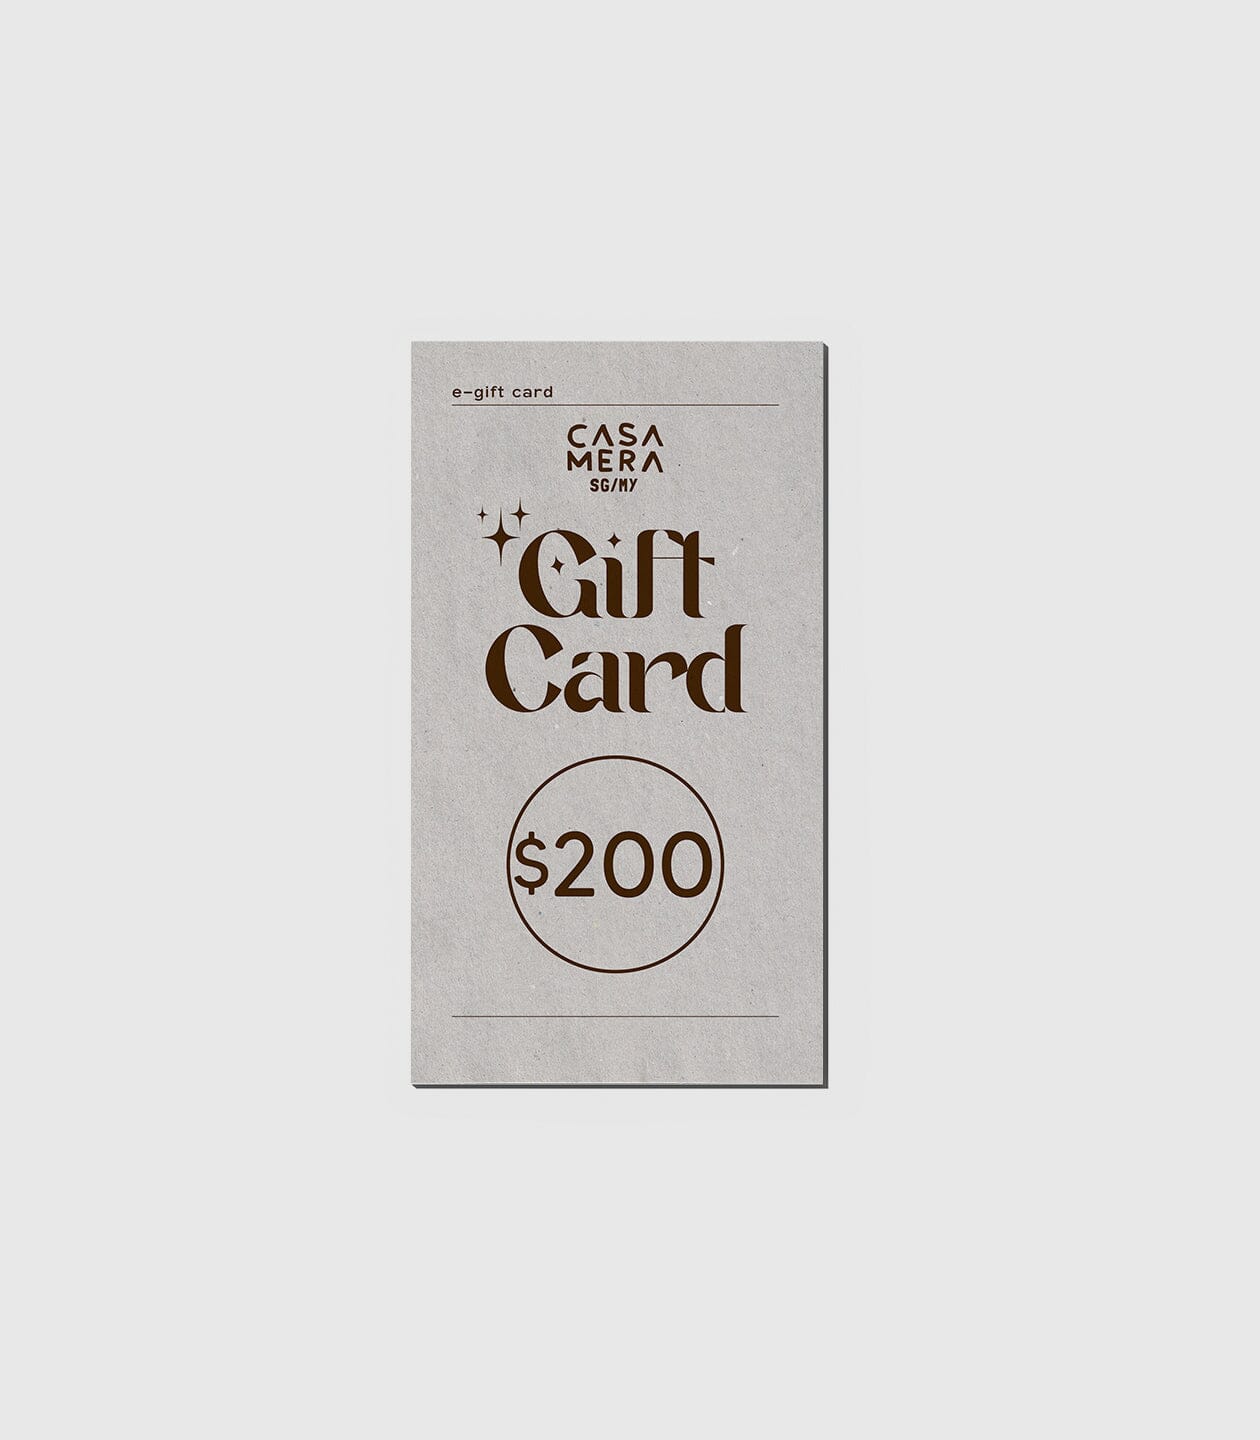 Gift Card casamerasg $200.00 